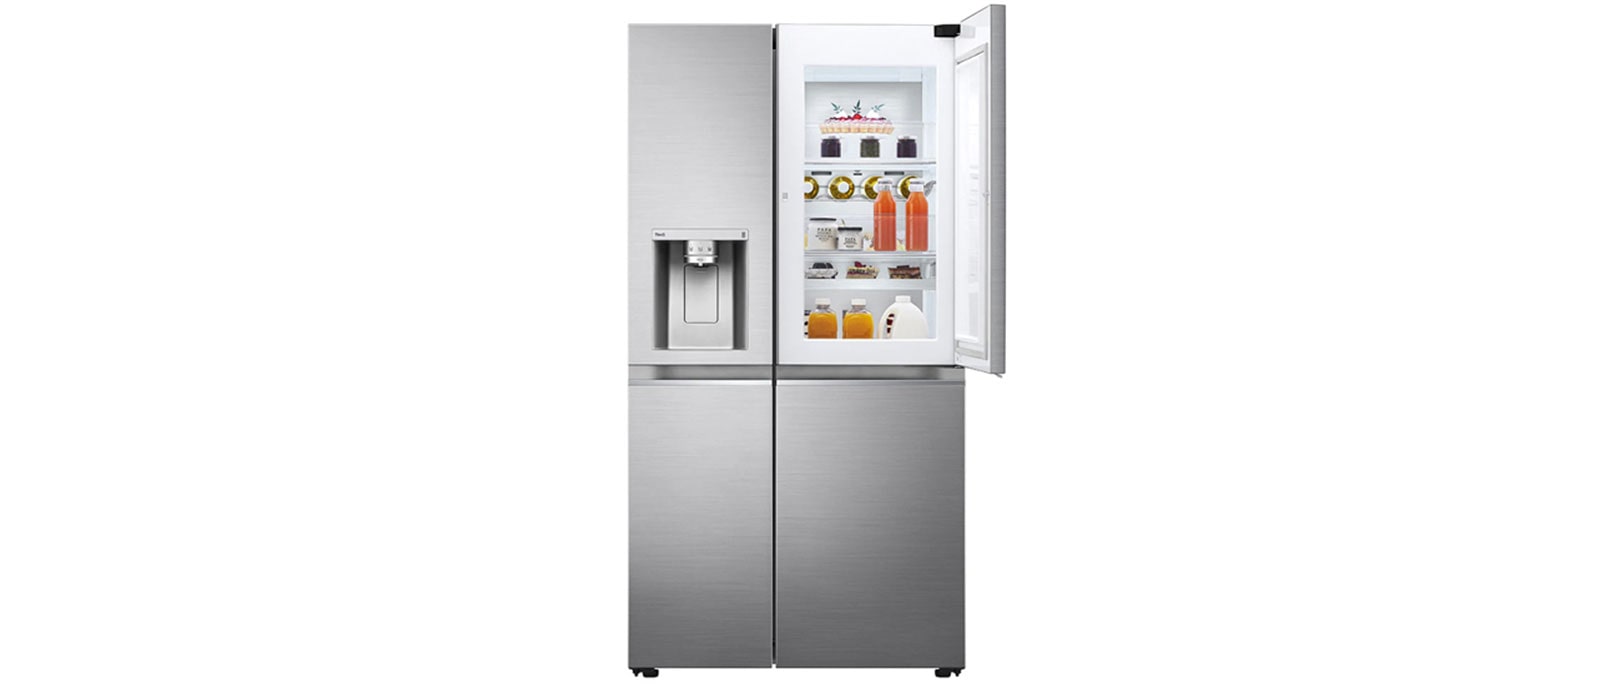 Qué son los frigoríficos no frost y sus ventajas